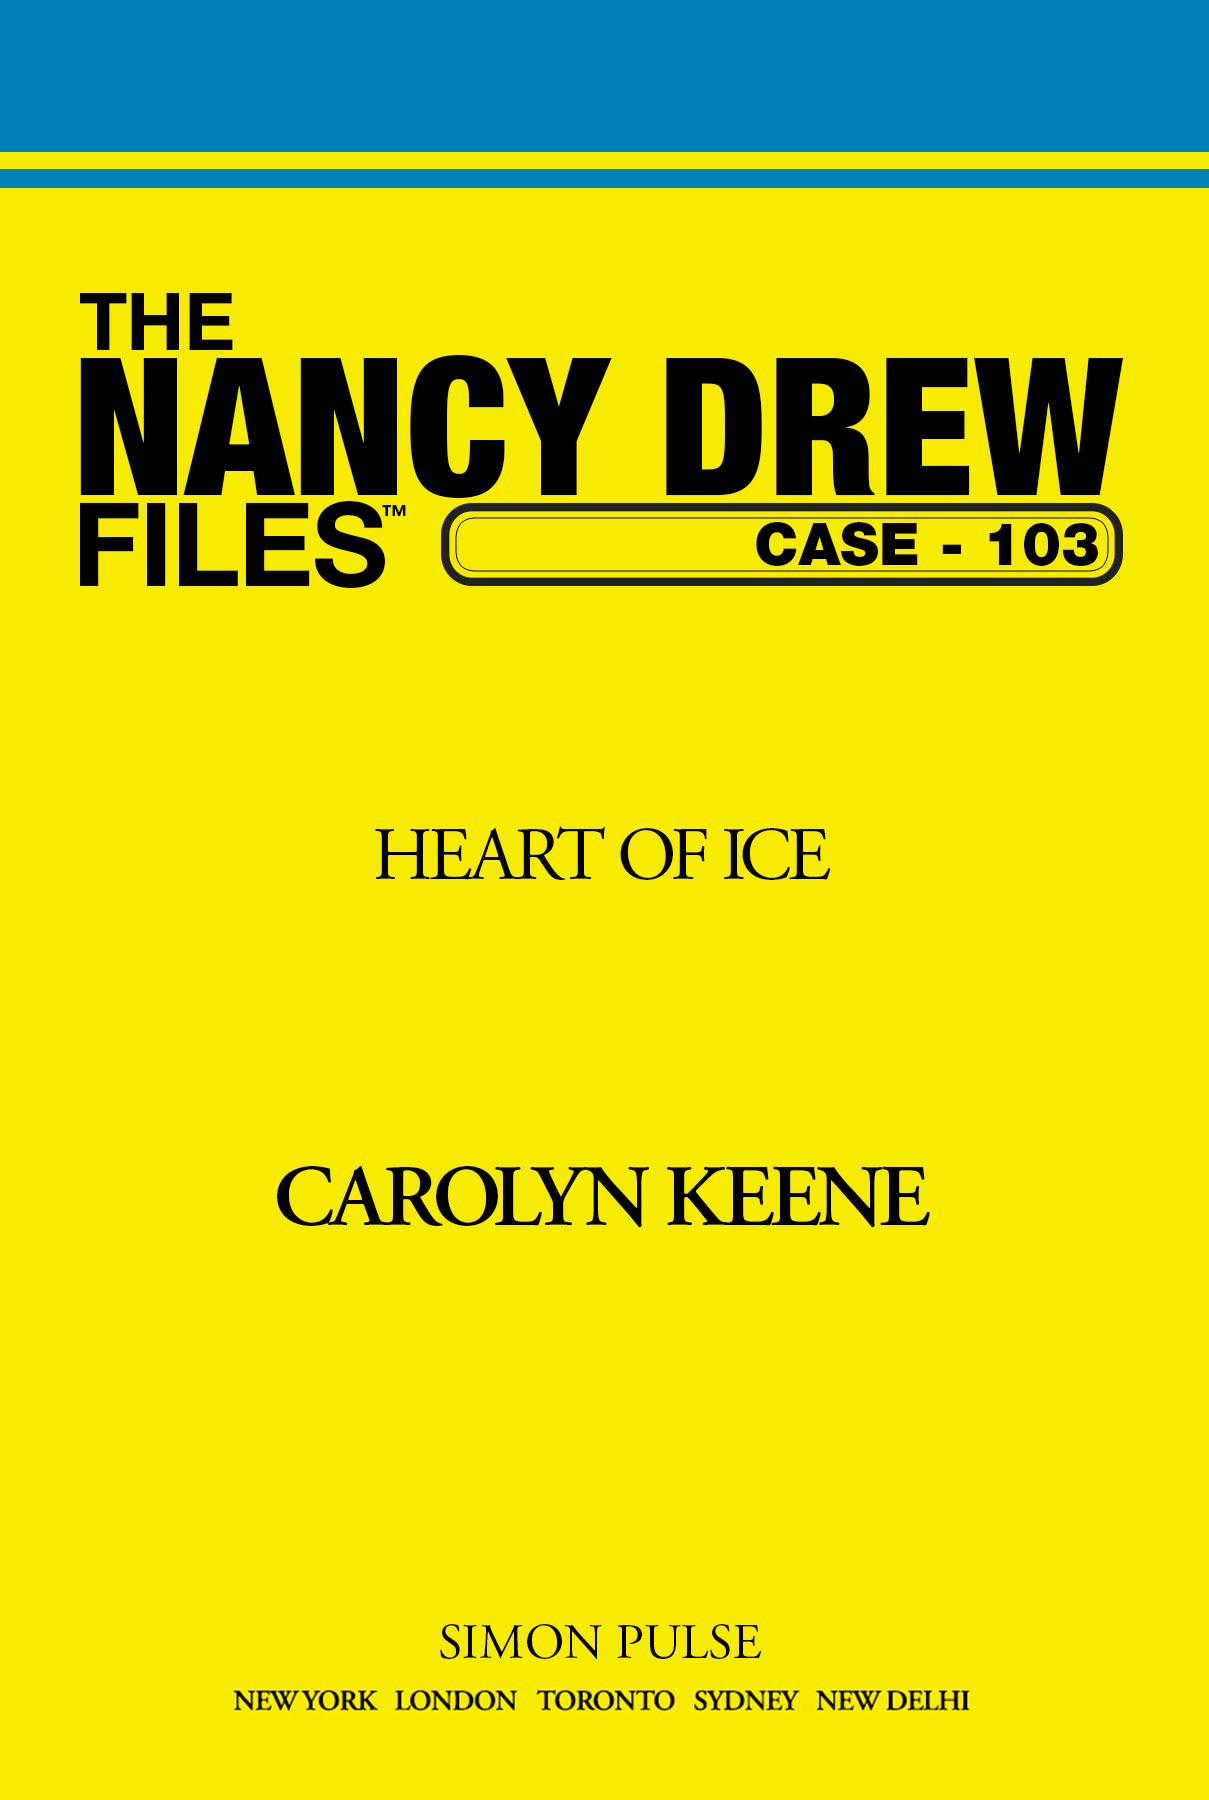 Heart of Ice by Carolyn Keene